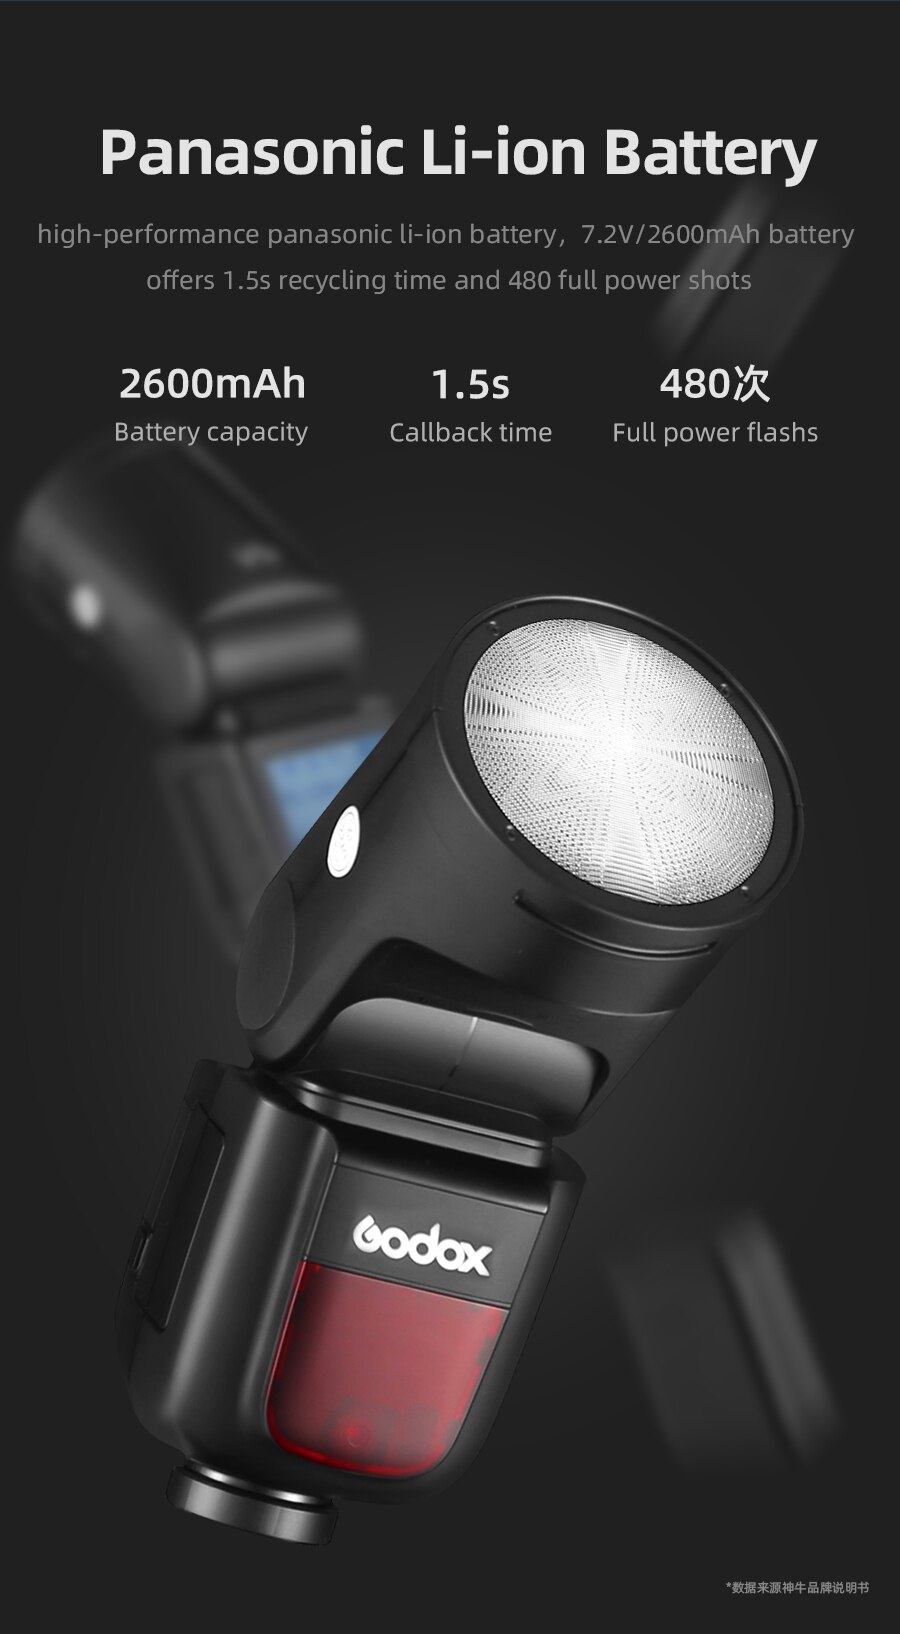 Godox V1 flash speedlight